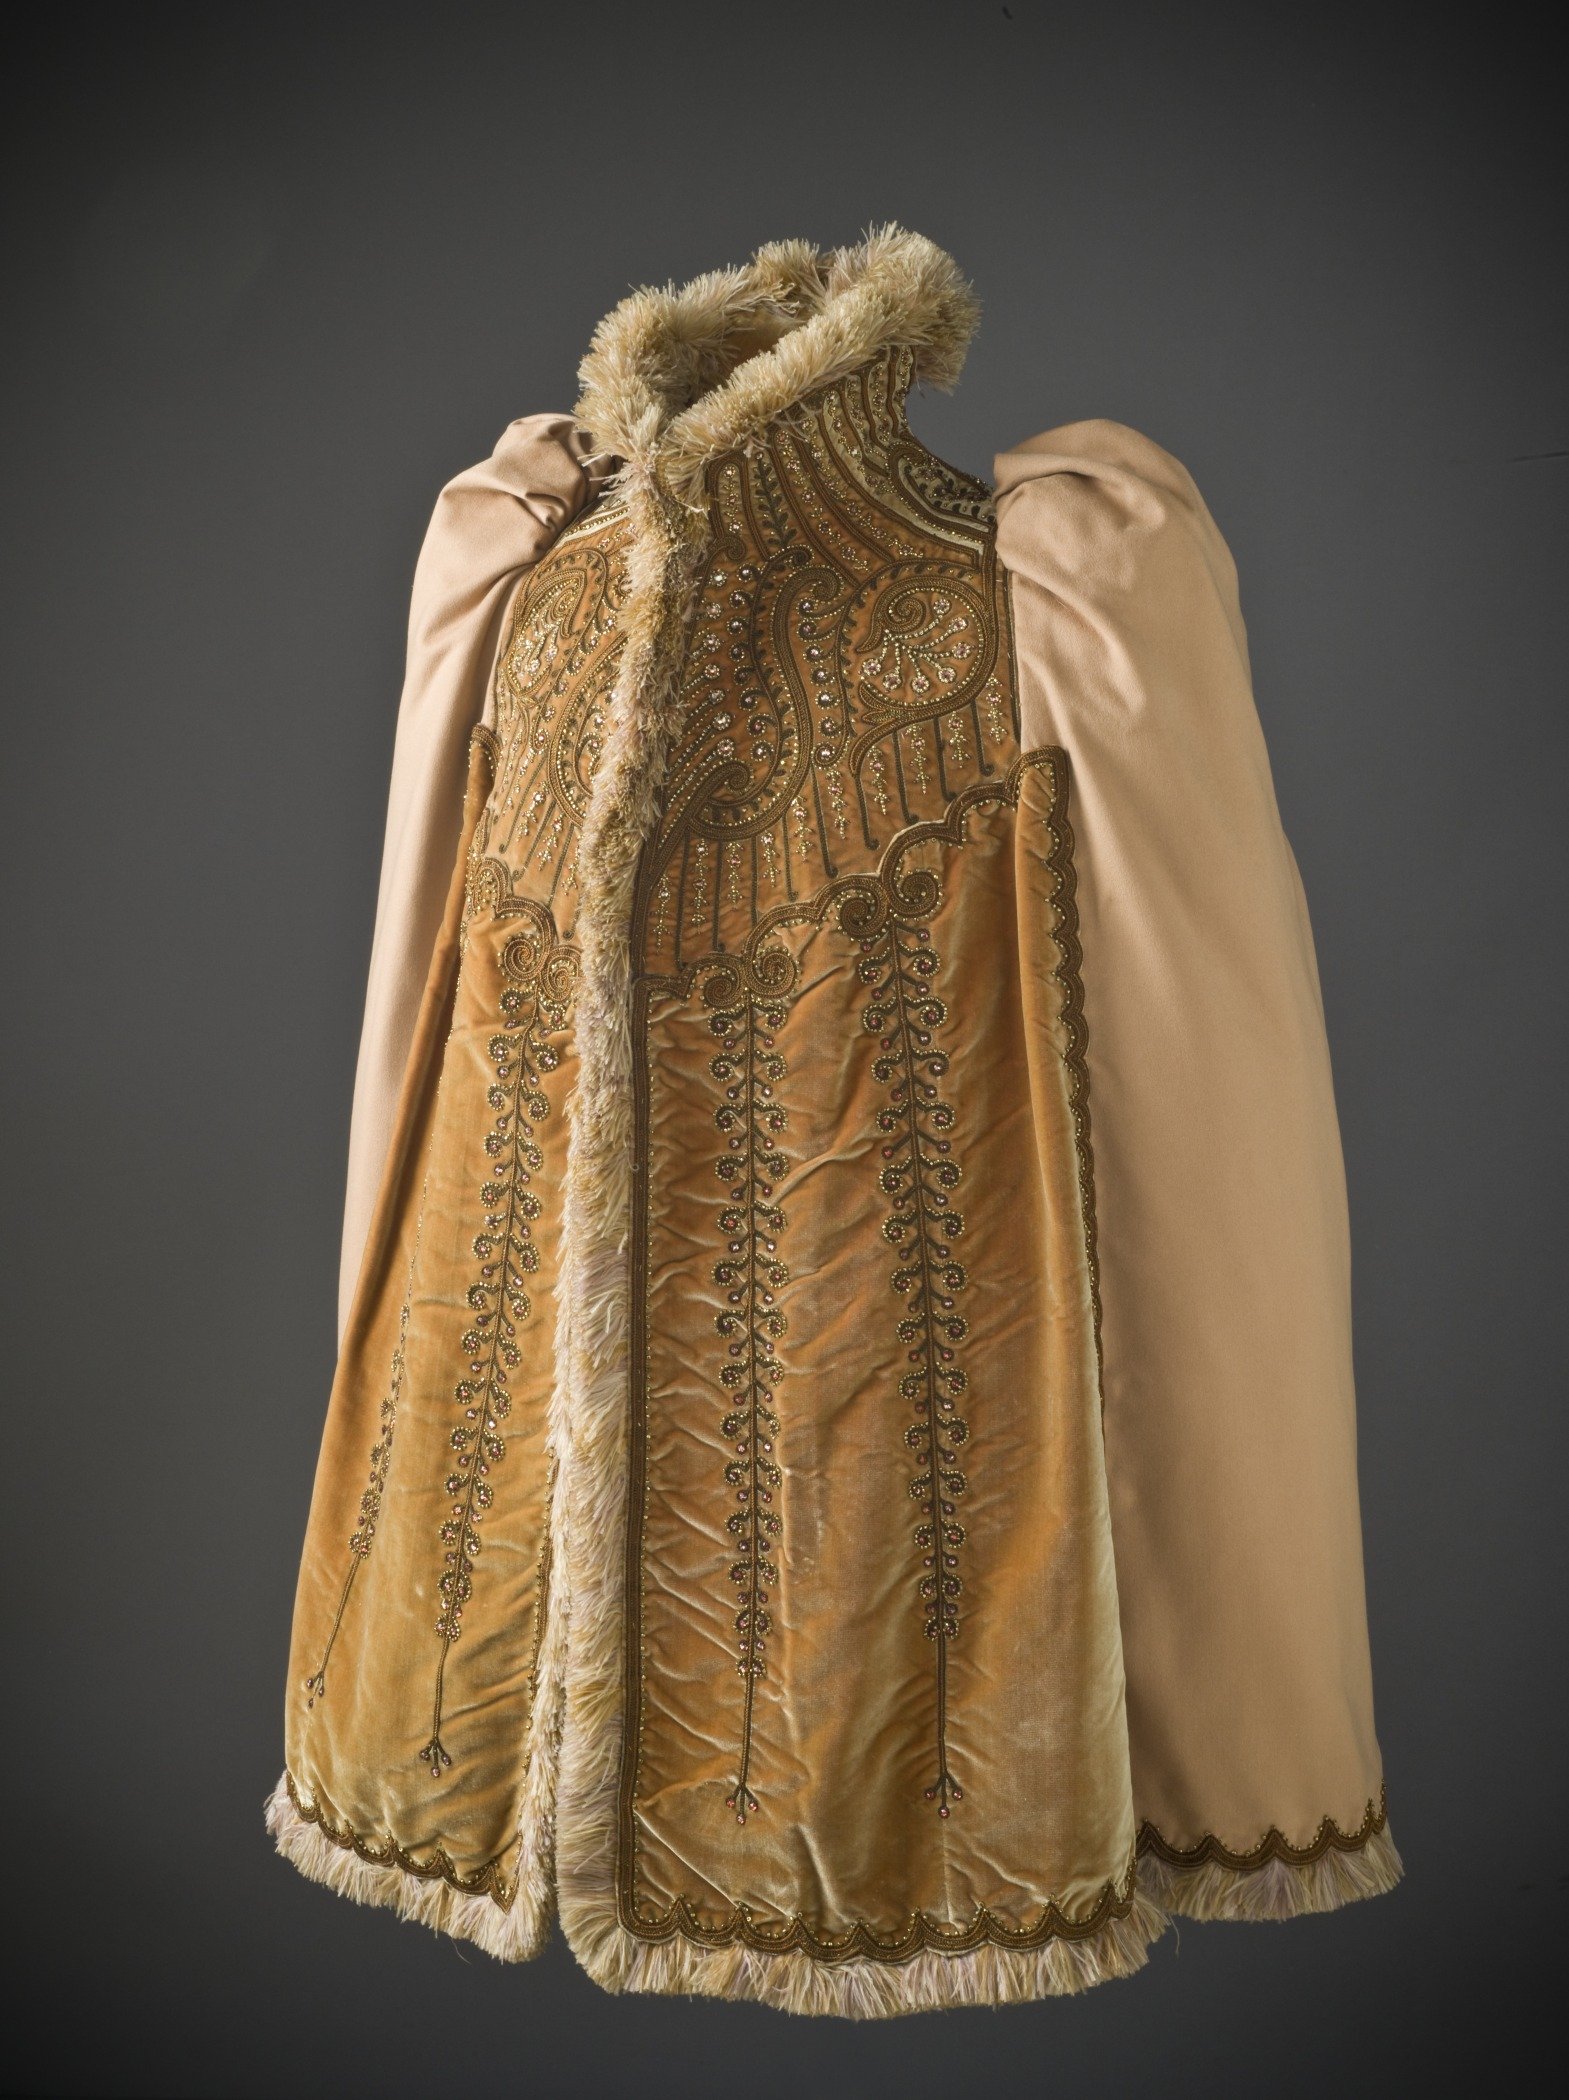 Манто одежда 19 век